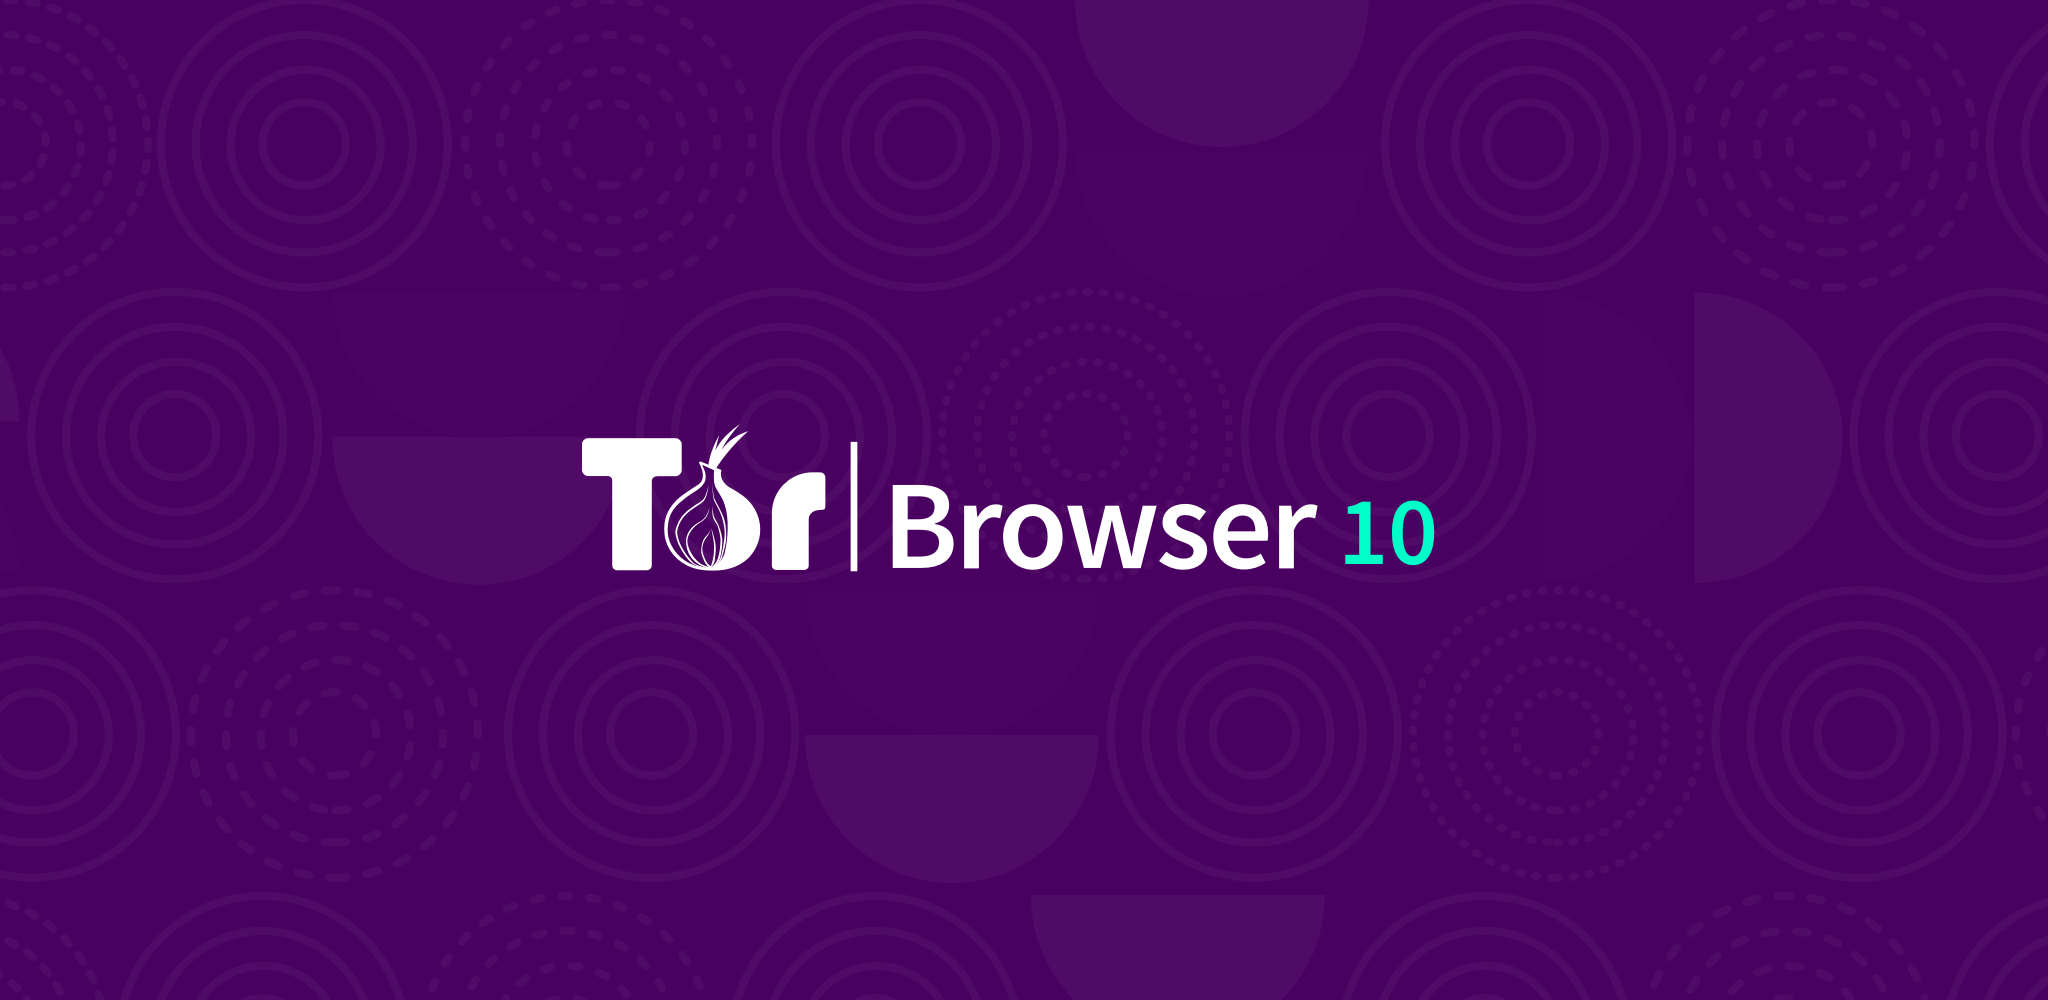 Download tor browser for windows 8 химические удобрения для конопли